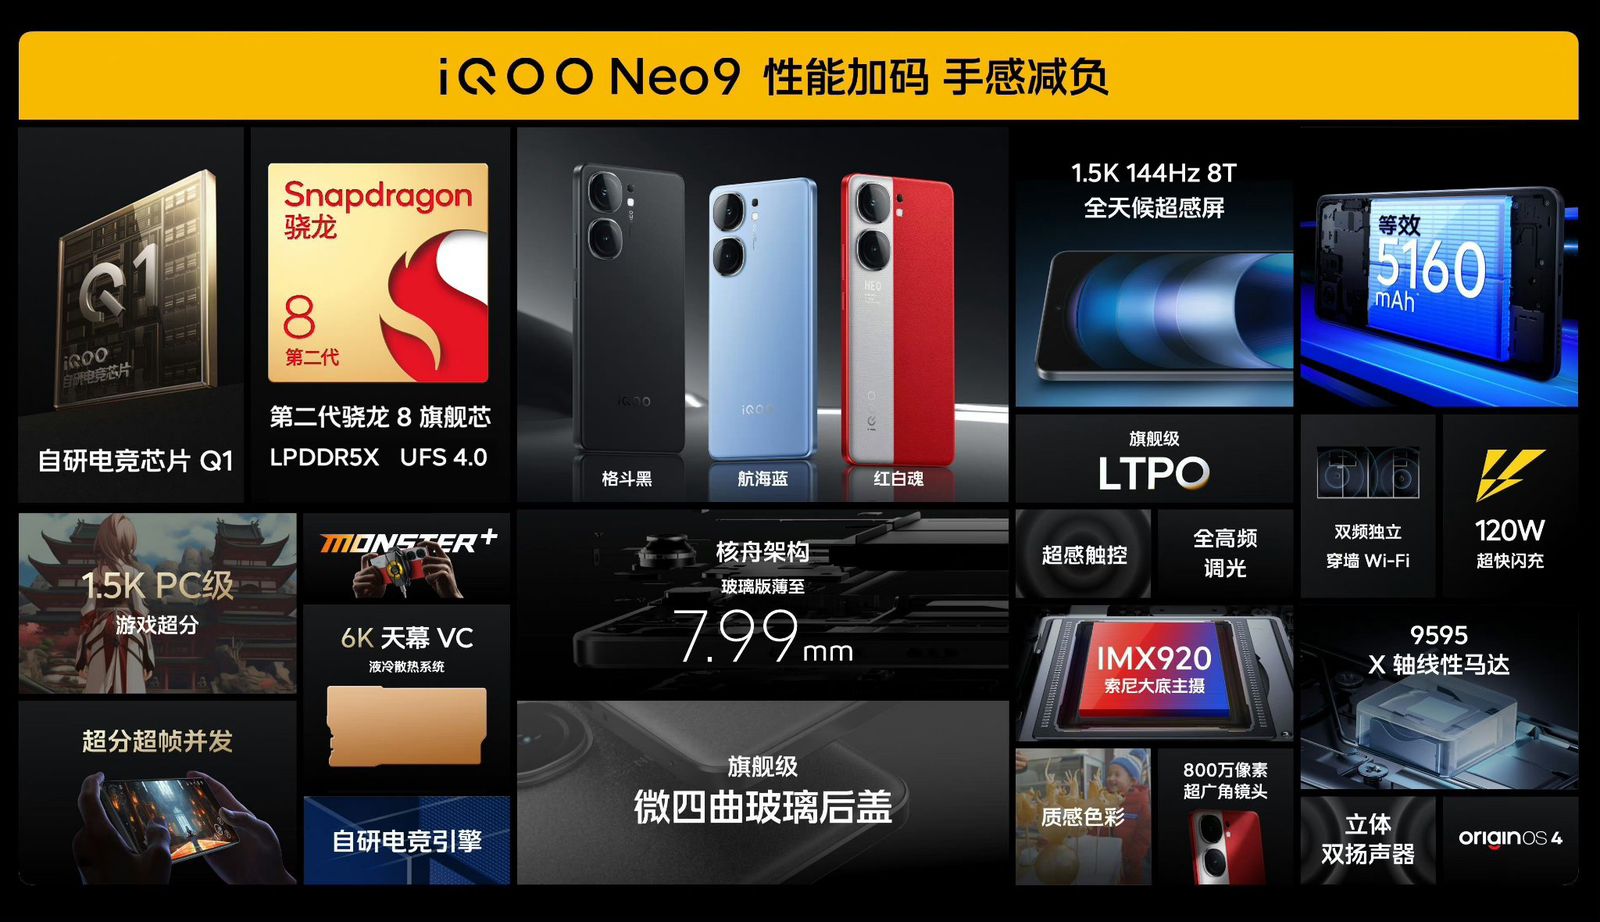 iQOO Neo 9 Series Launch: Key Specs